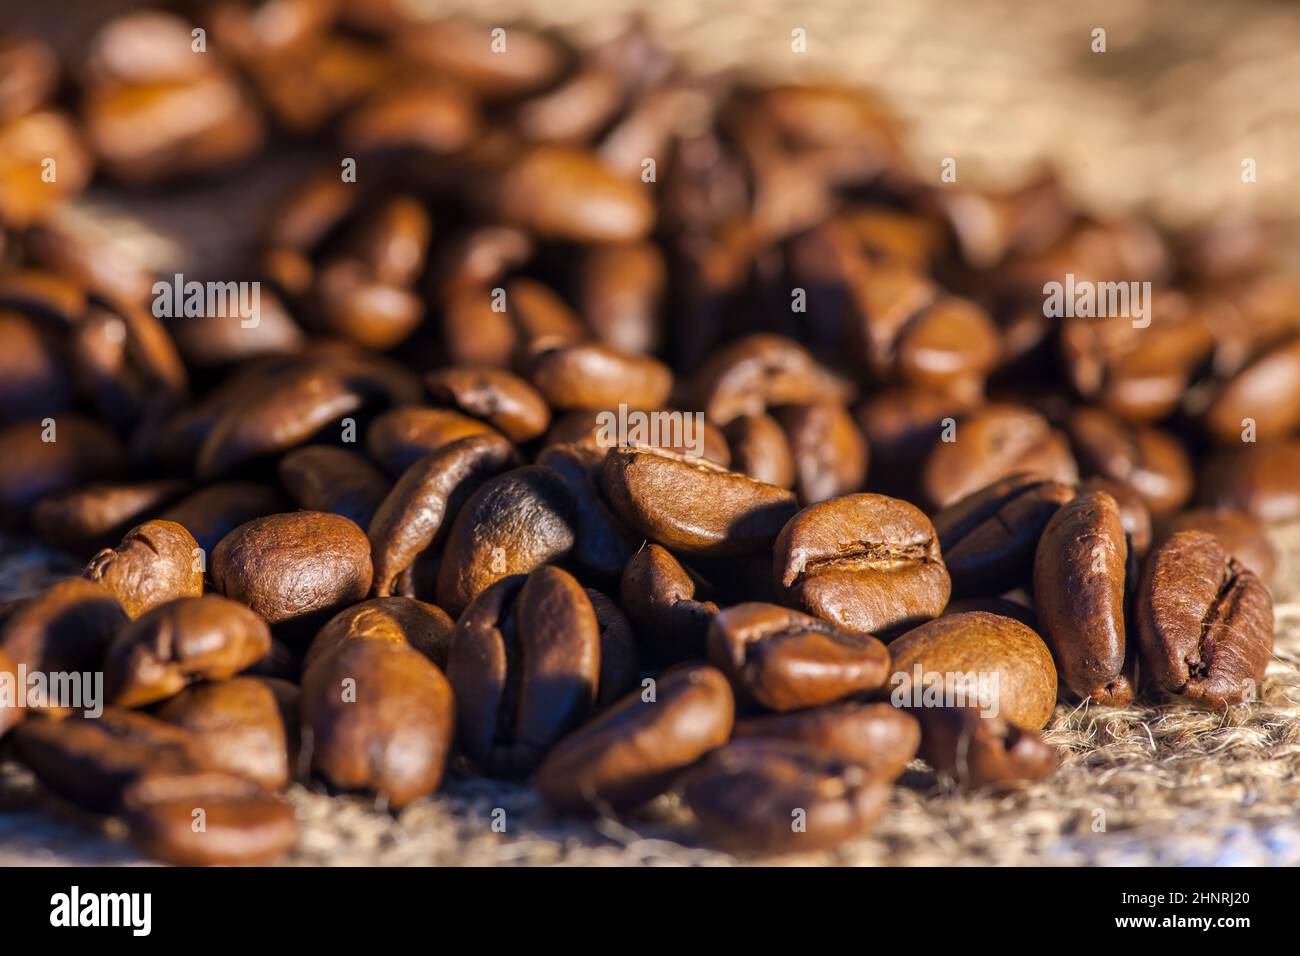 Gros plan de grains de café fraîchement torréfiés saupoudés d'un sac de toile de jute avec une faible profondeur de champ. Banque D'Images